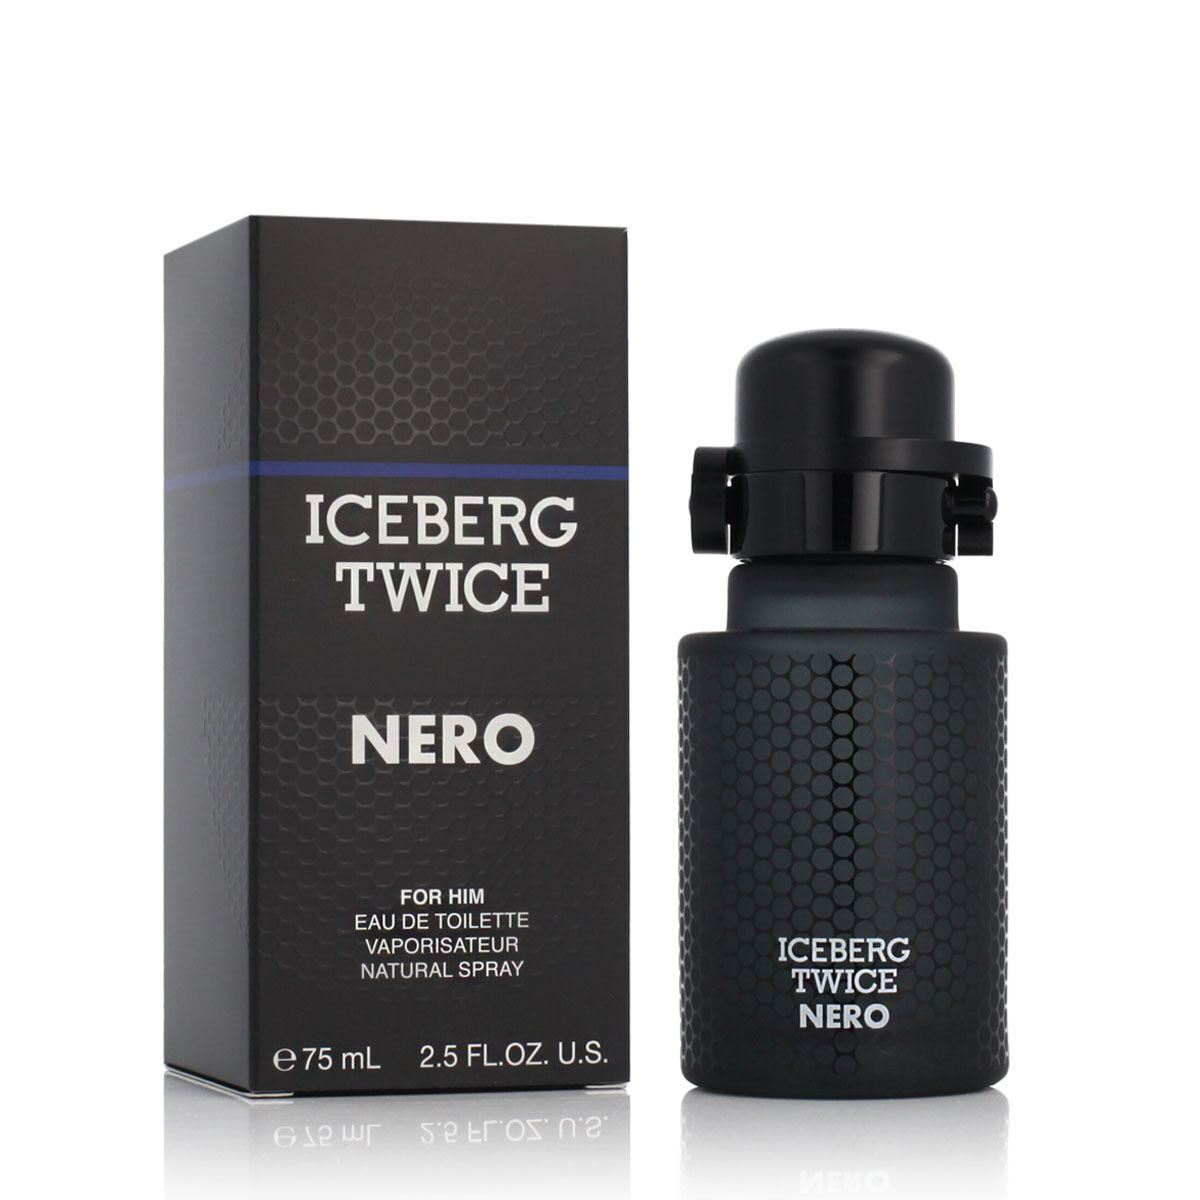 Parfum Homme Iceberg EDT Twice Nero For Him (75 ml)